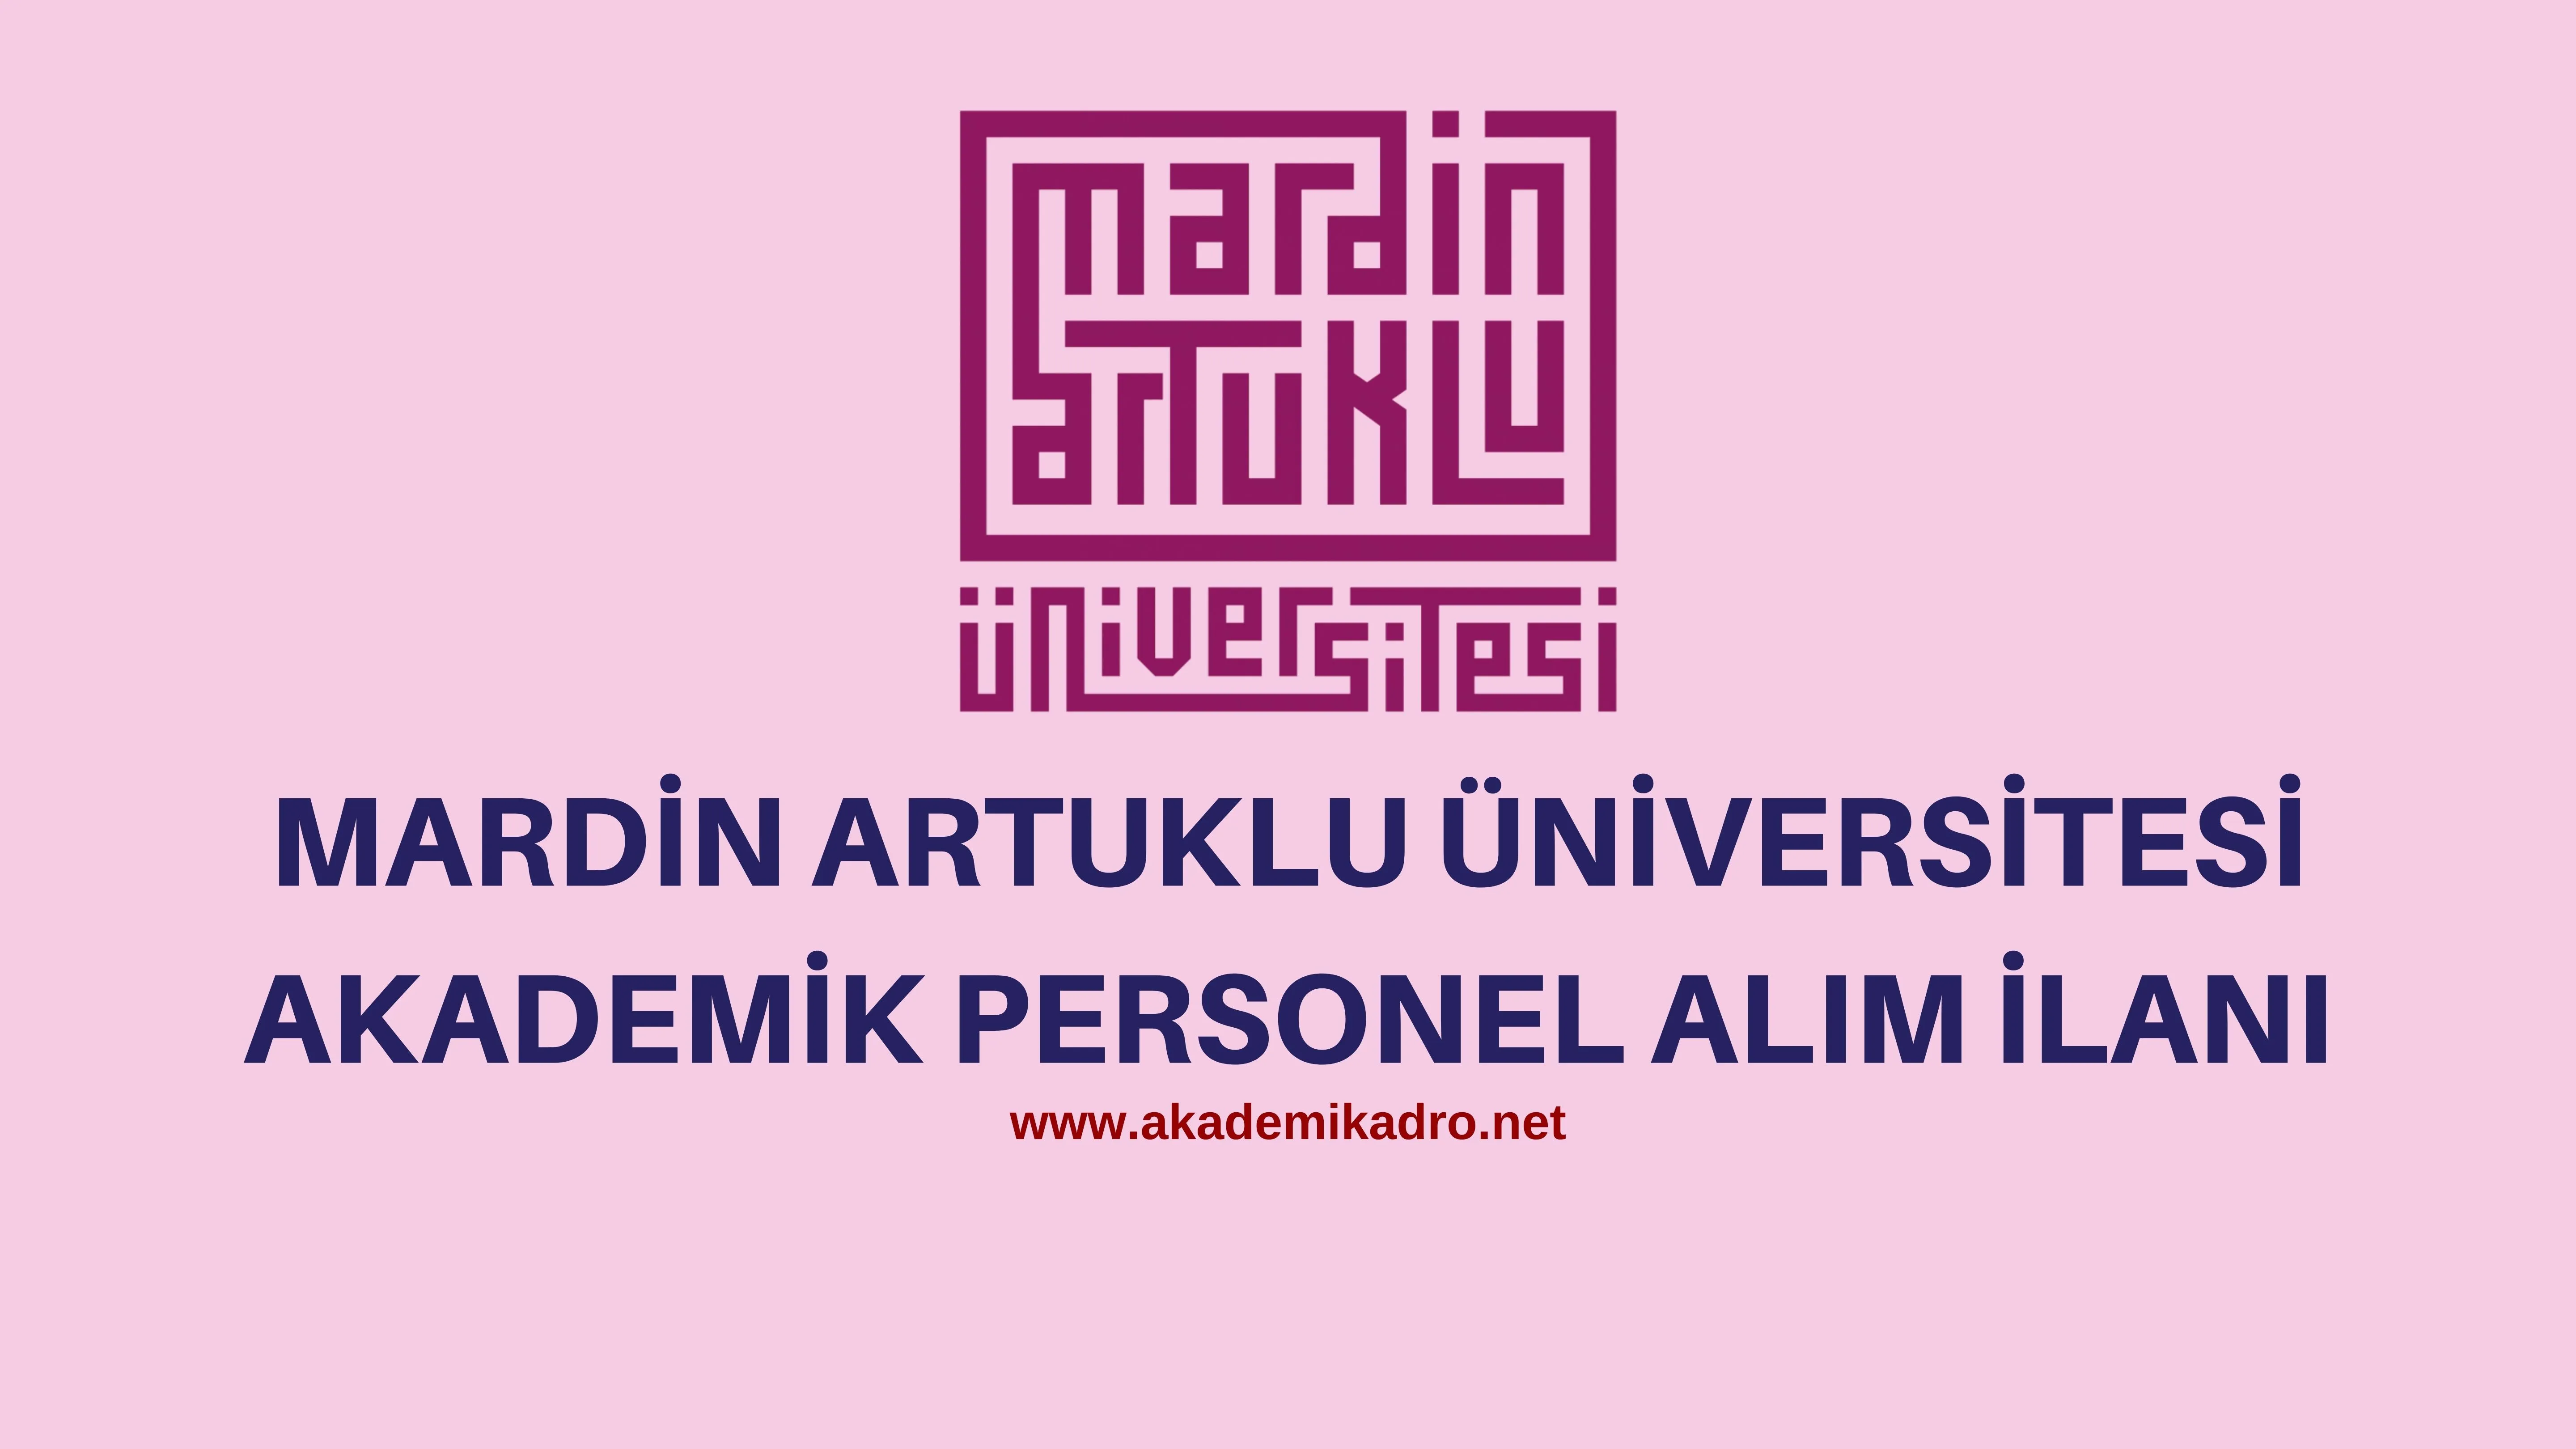 Mardin Artuklu Üniversitesi 20 akademik personel alacak